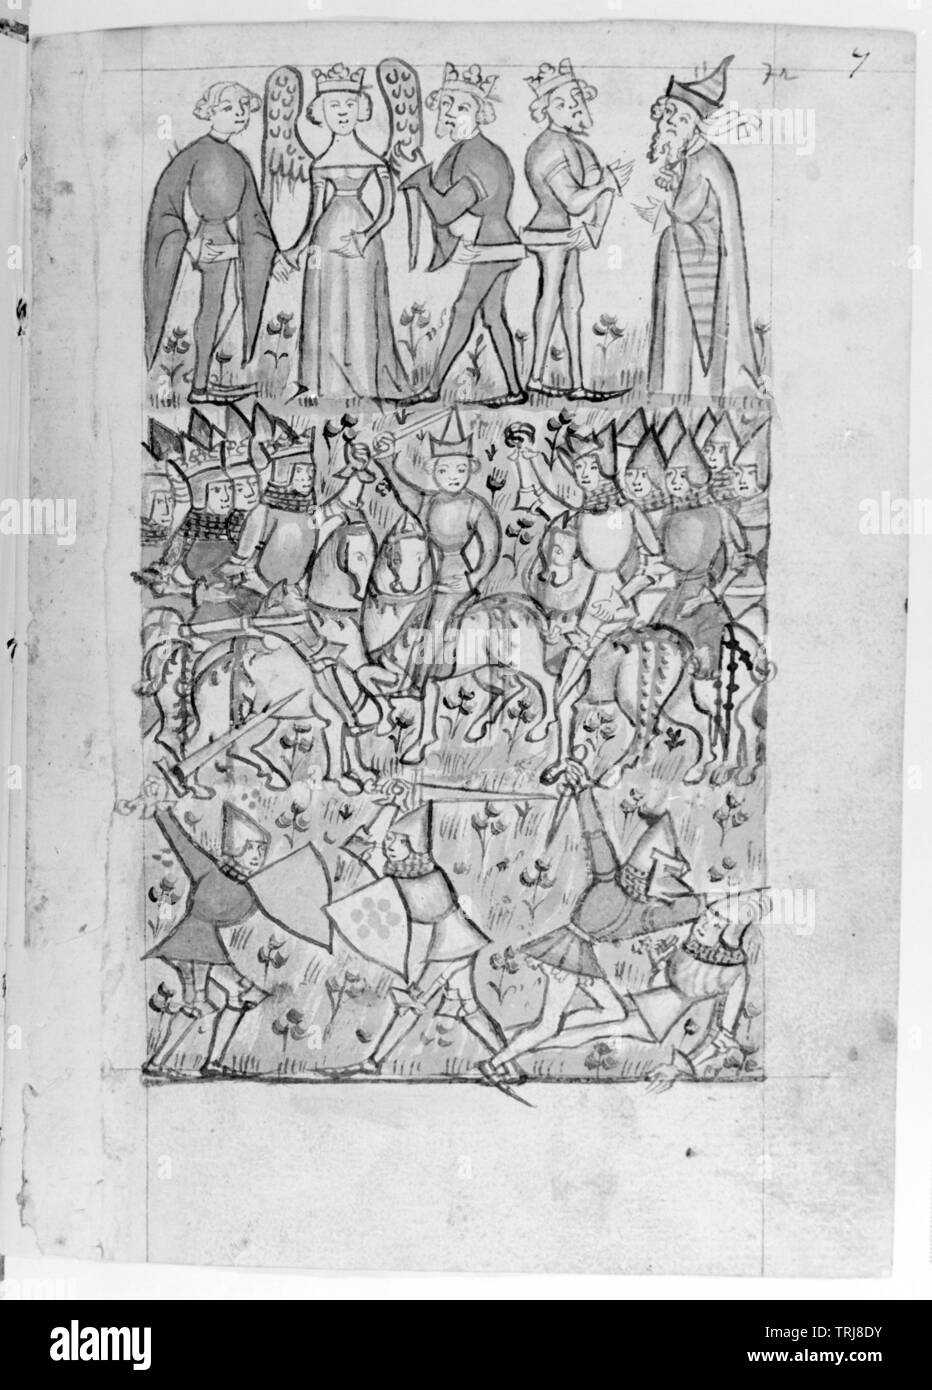 Codex 2915, Folio 7, ganzseitigen Federzeichnung: 'Streit um Paris', Repro negativ auf Basis der Federzeichnung, Additional-Rights - Clearance-Info - Not-Available Stockfoto